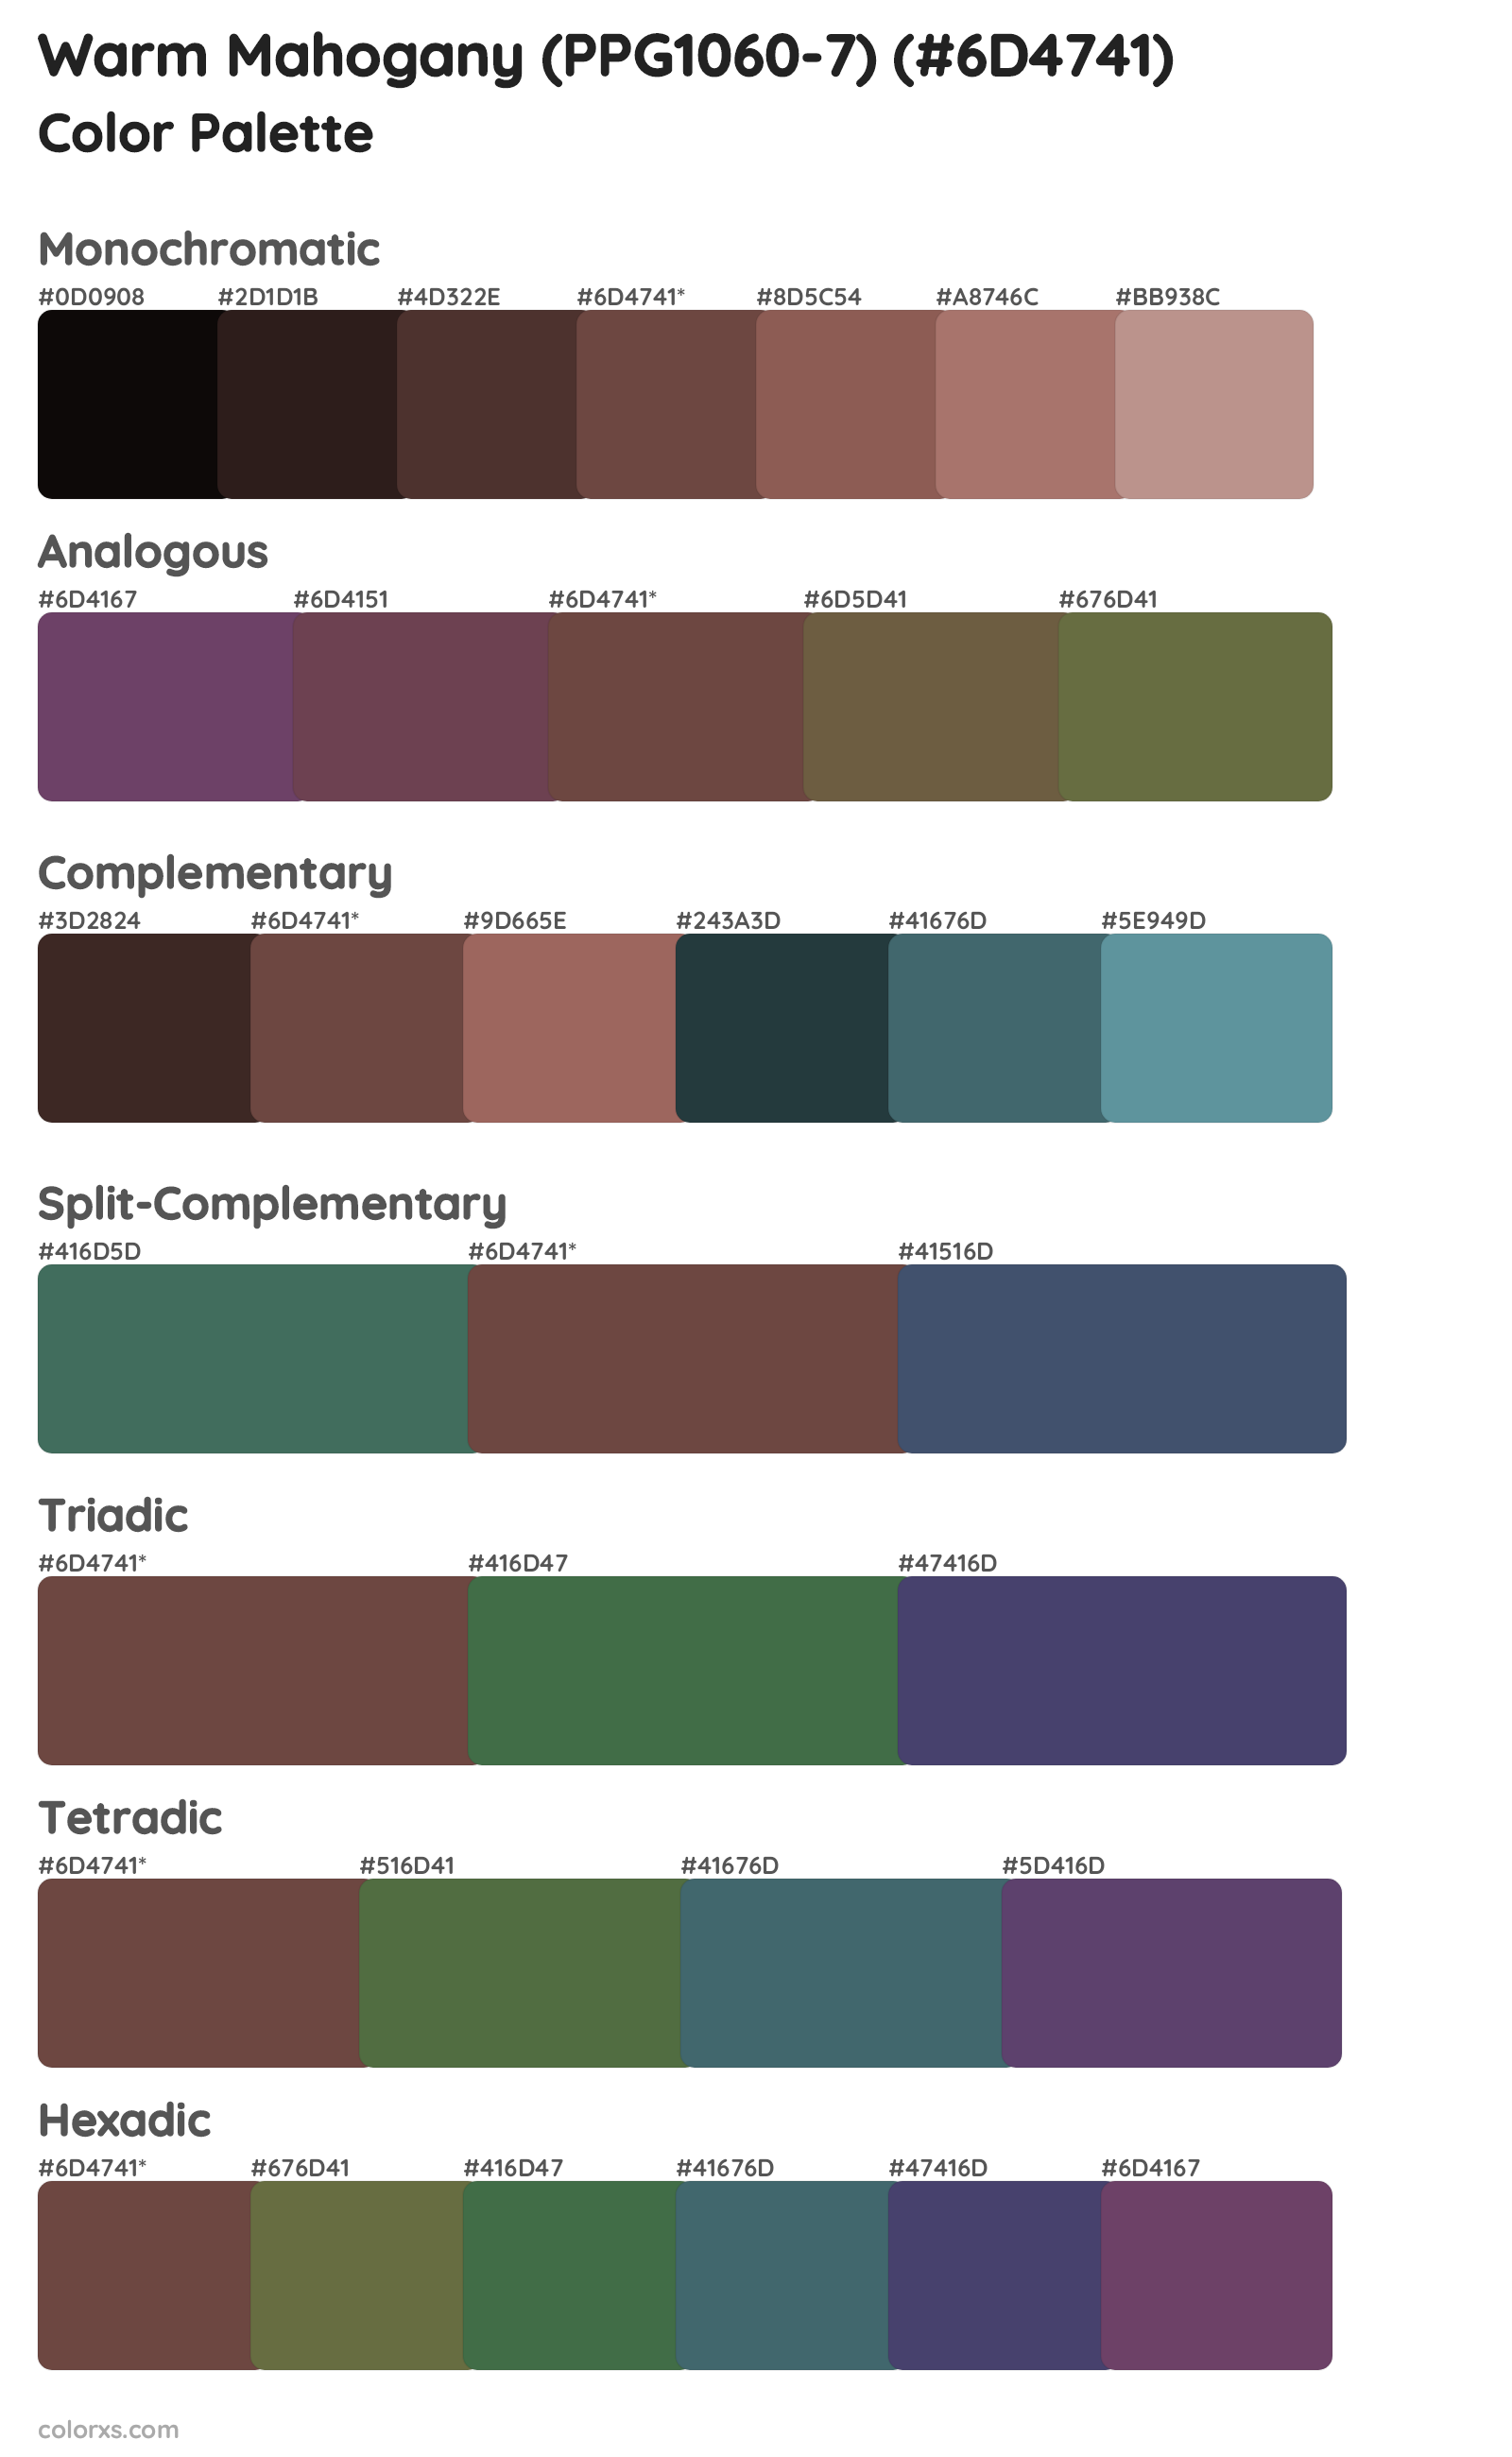 Warm Mahogany (PPG1060-7) Color Scheme Palettes